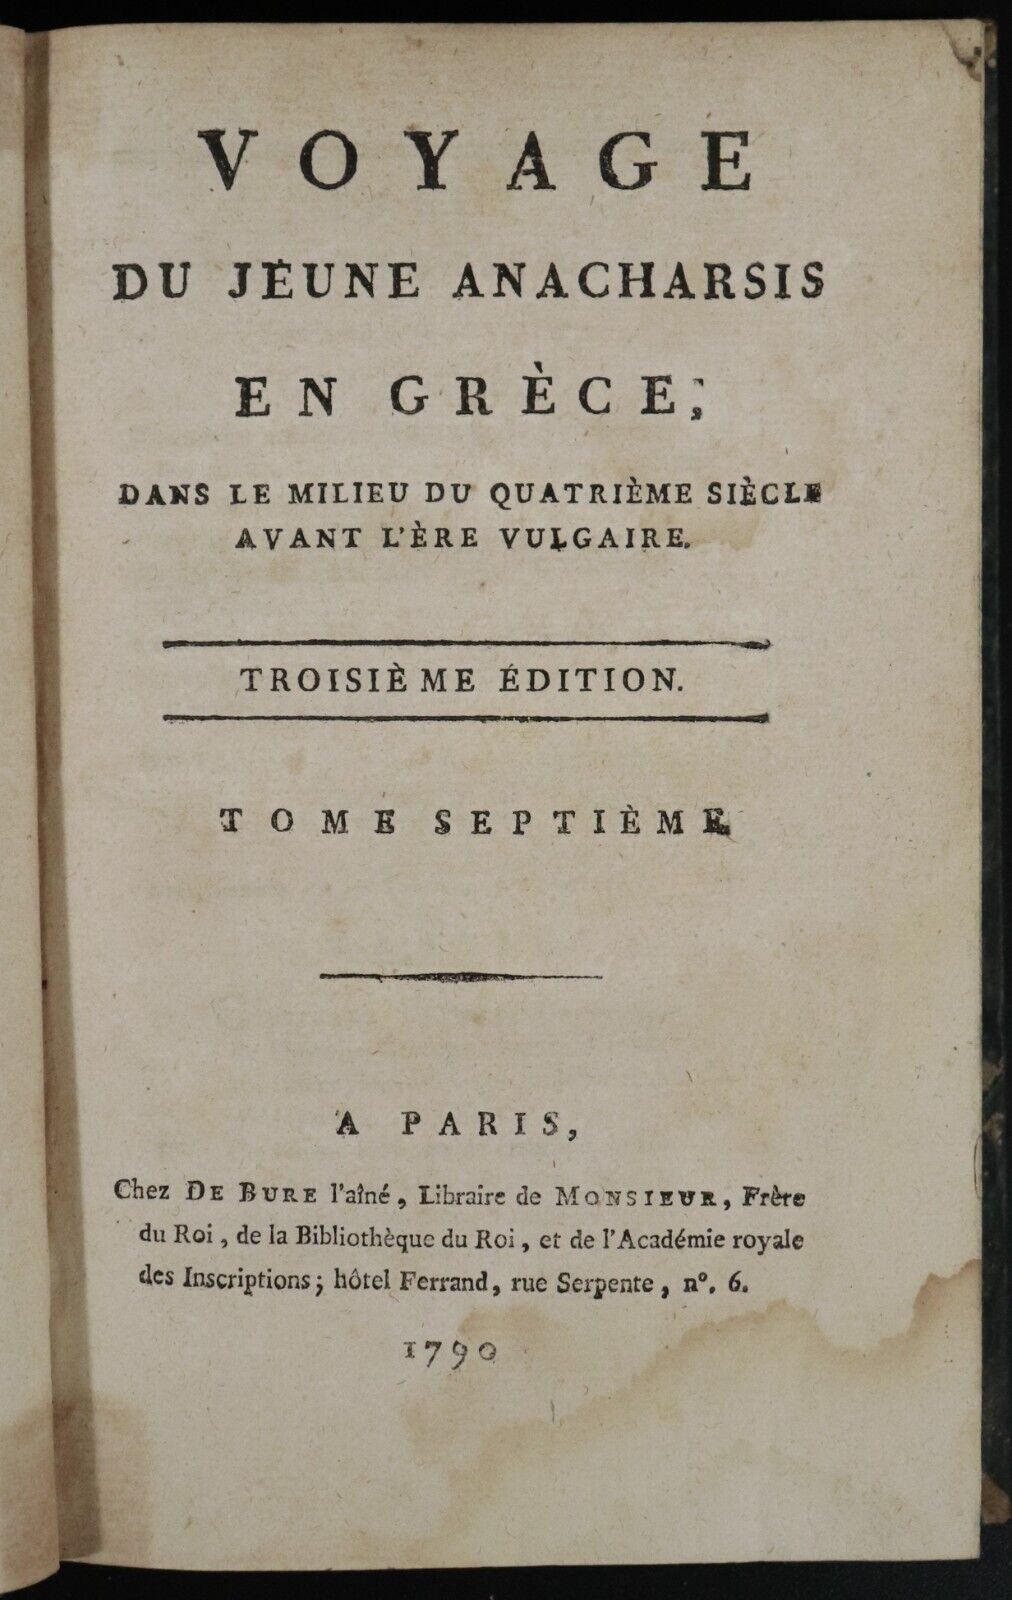 1790 6vol Voyage De Jeune Anacharsis En Grece Antiquarian History Books